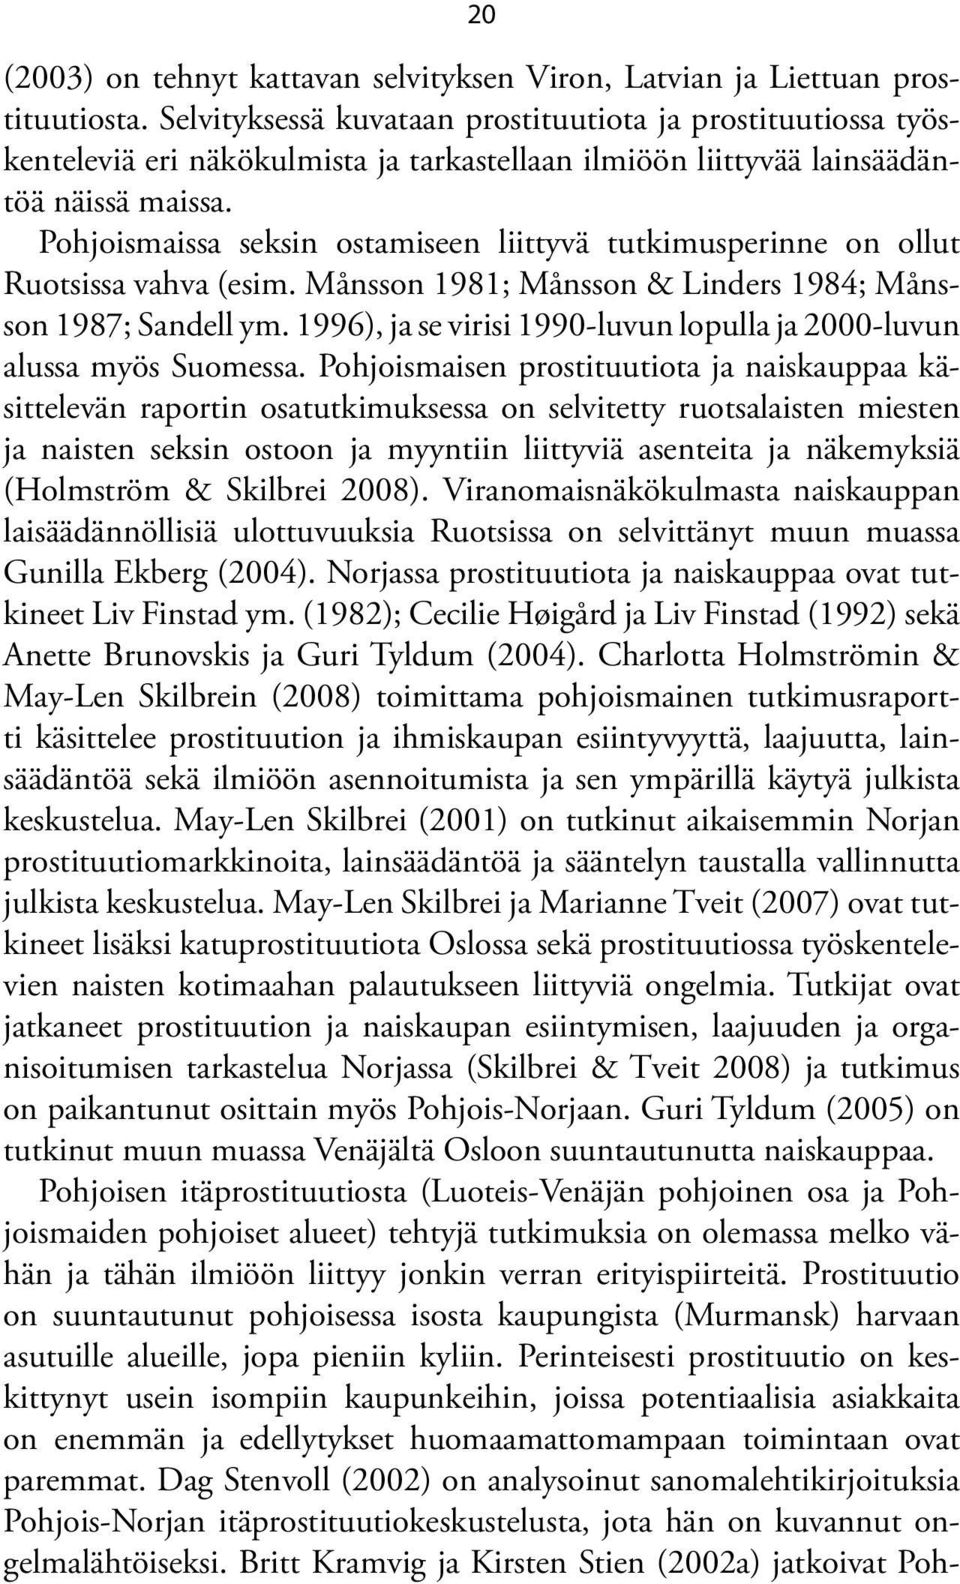 Pohjoismaissa seksin ostamiseen liittyvä tutkimusperinne on ollut Ruotsissa vahva (esim. Månsson 1981; Månsson & Linders 1984; Månsson 1987; Sandell ym.